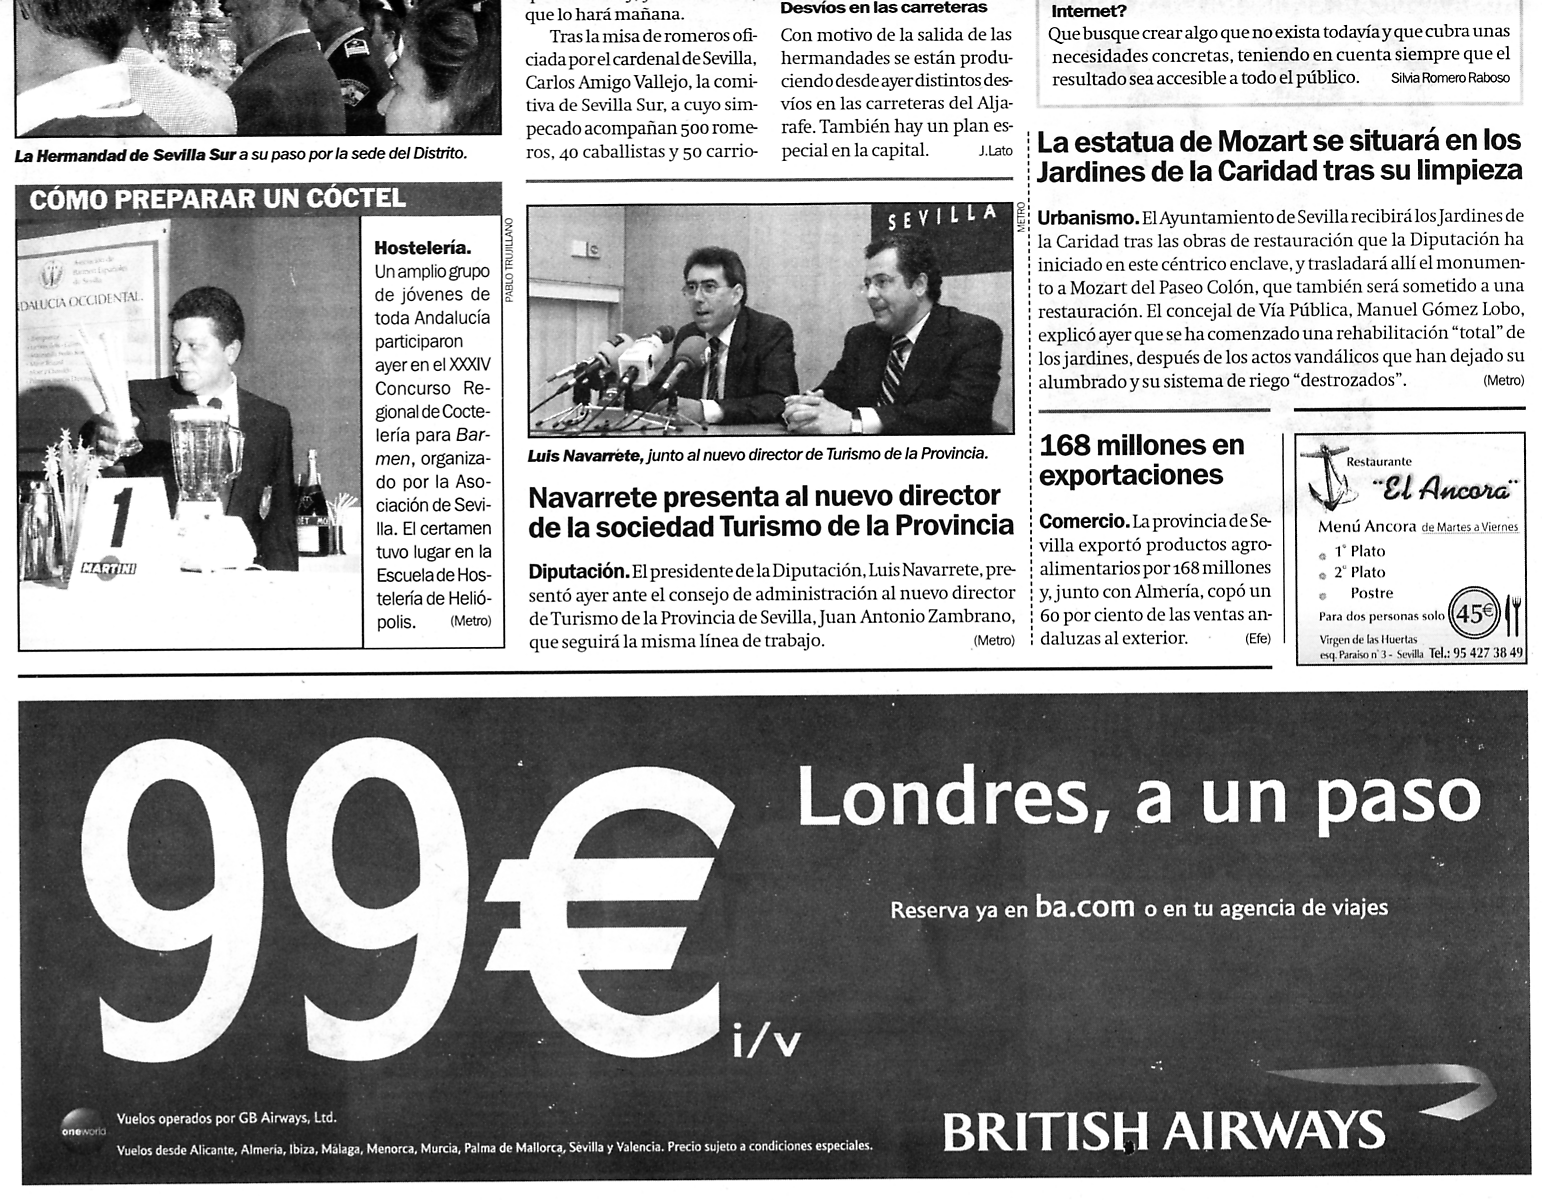 Metro News Sevilla (26-05-2004) (24-05-2004) (B) / Pulse Aquí para Visitar su Web